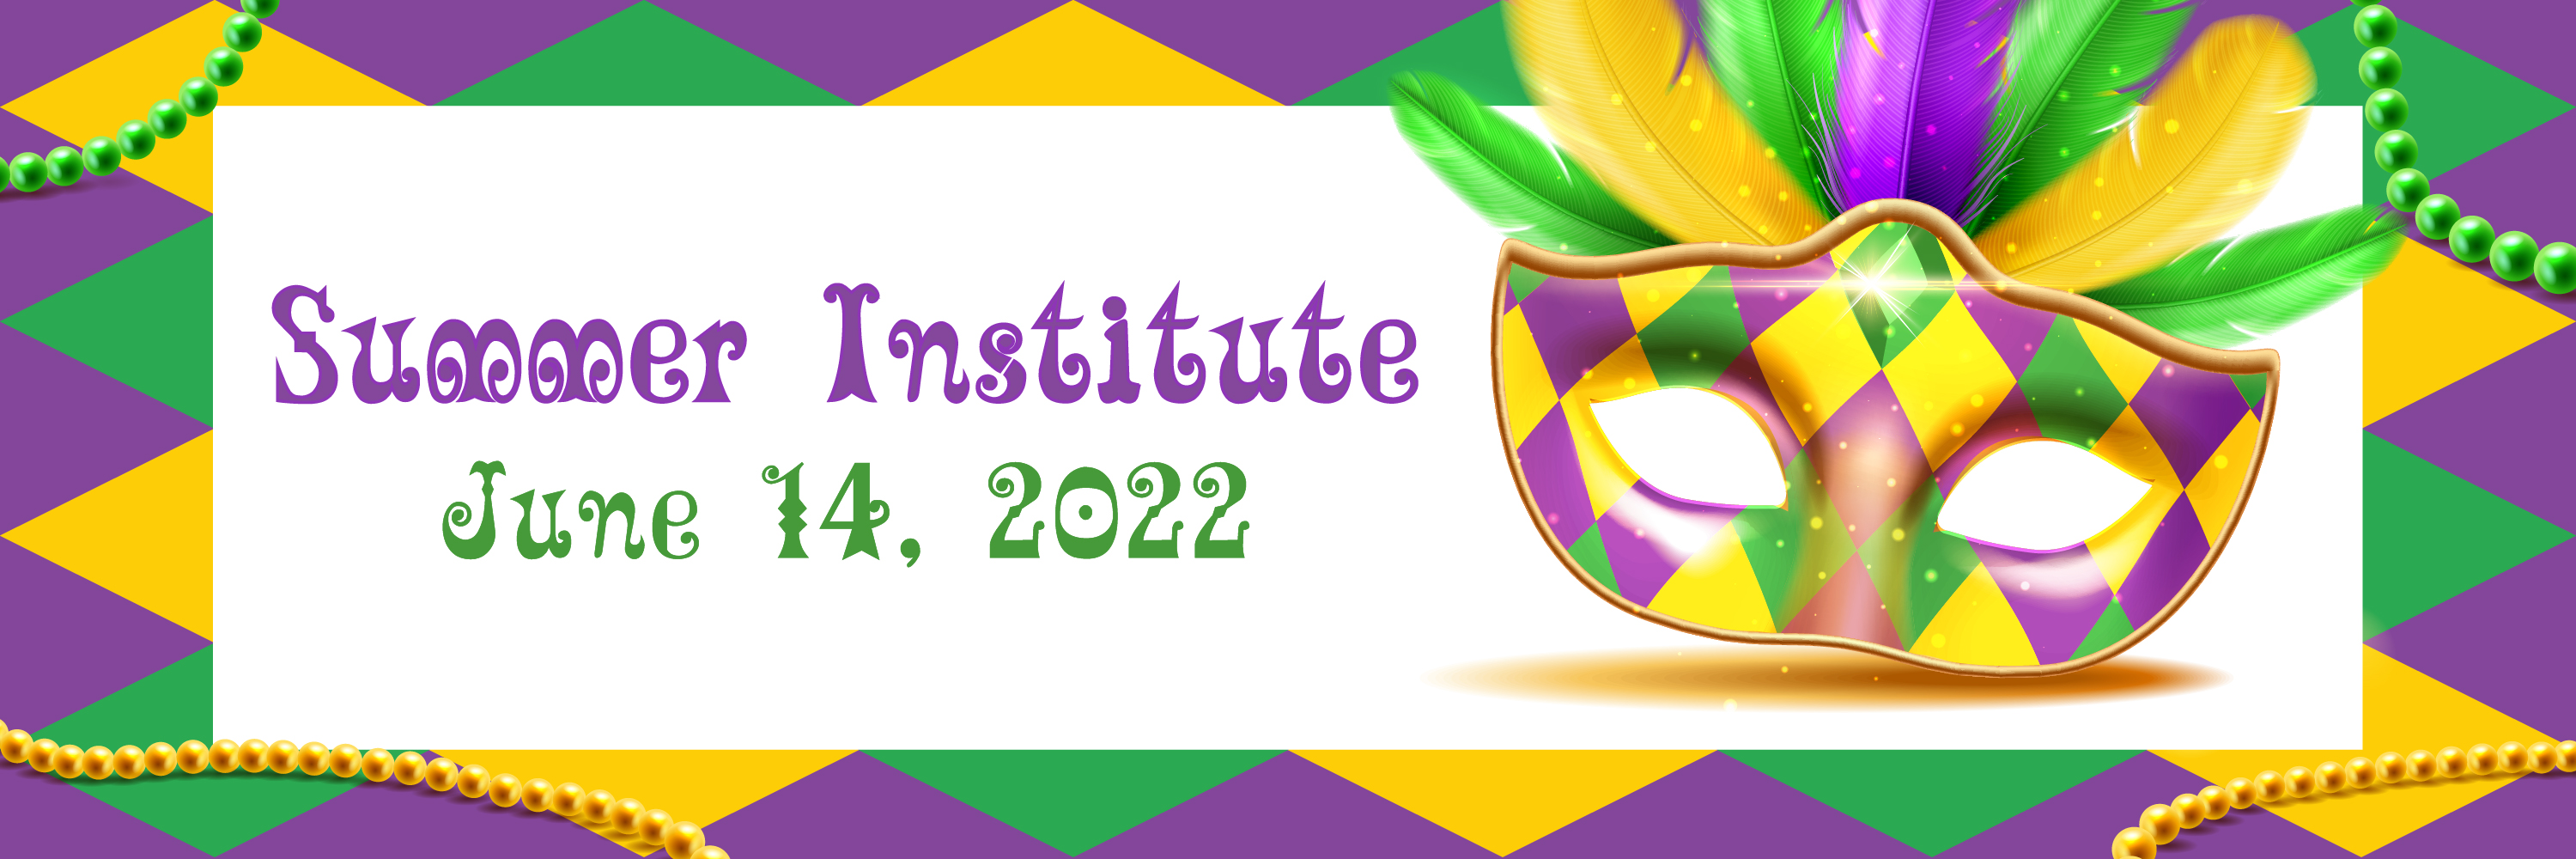 Summer Institute June14, 2022